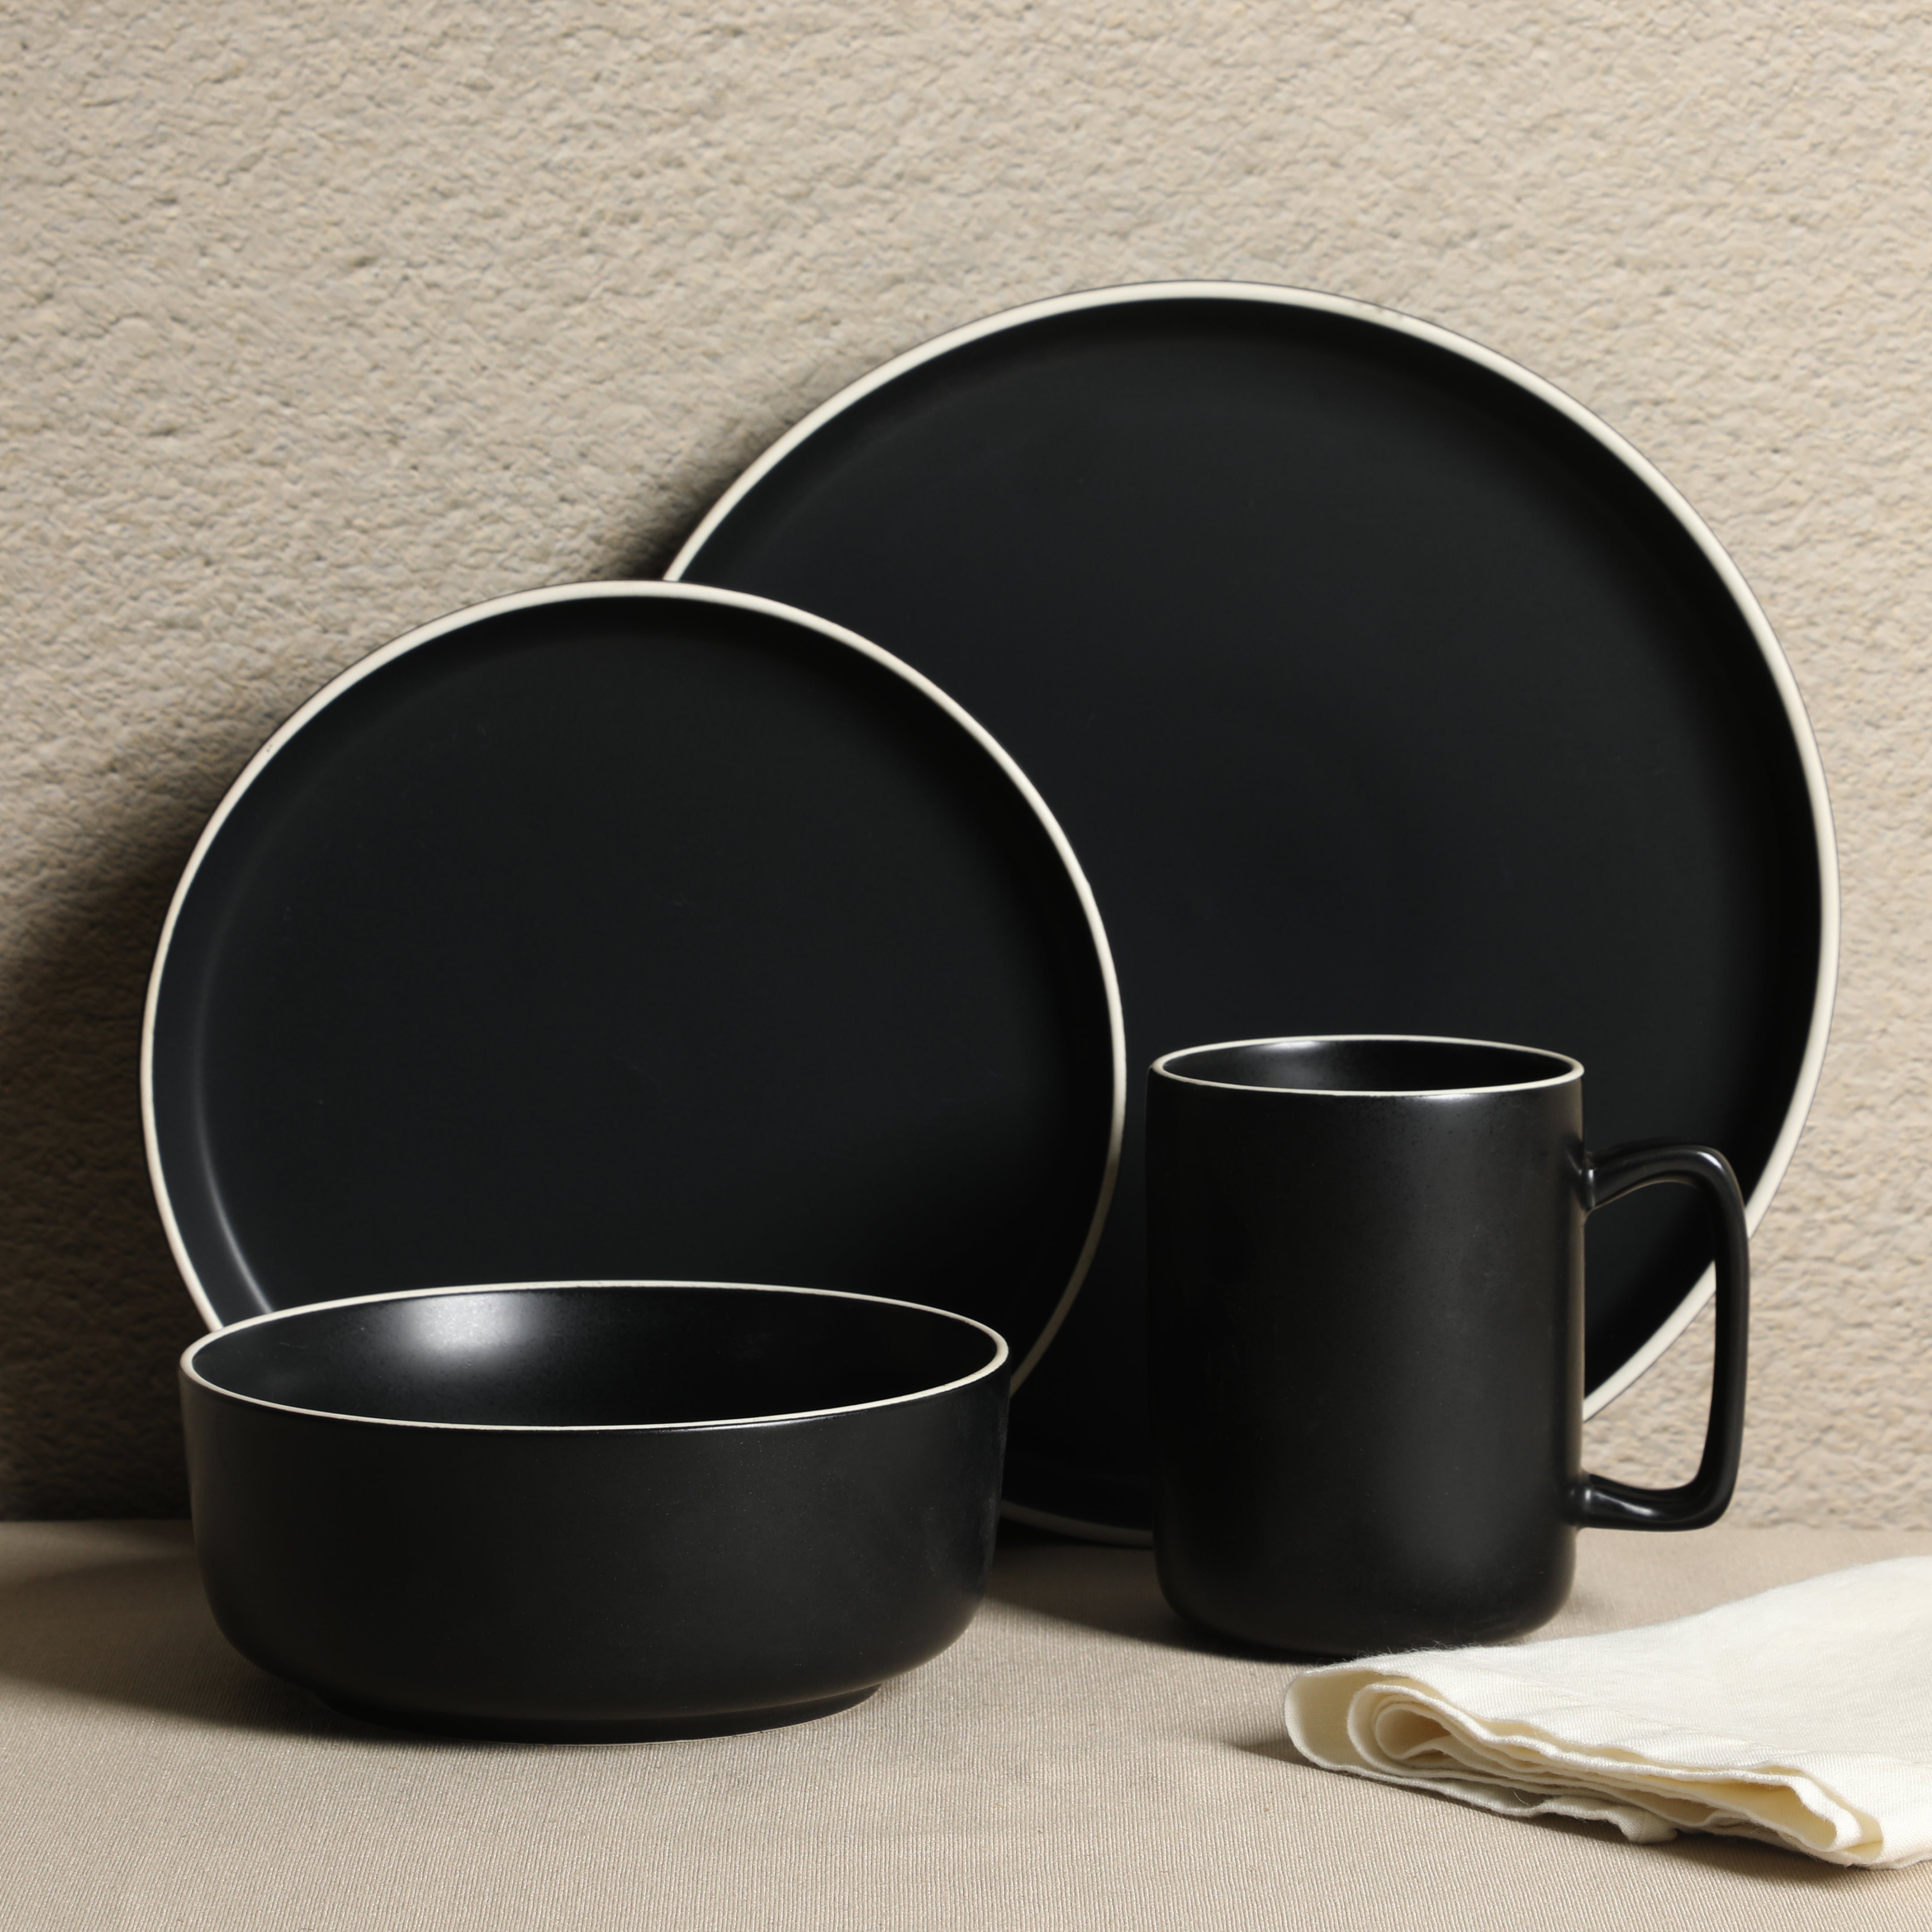 Gibson Home Zuma Nuevo 32 Piece Plates, Bowls, and Mug (Service for 8) Dinnerware Set - Black